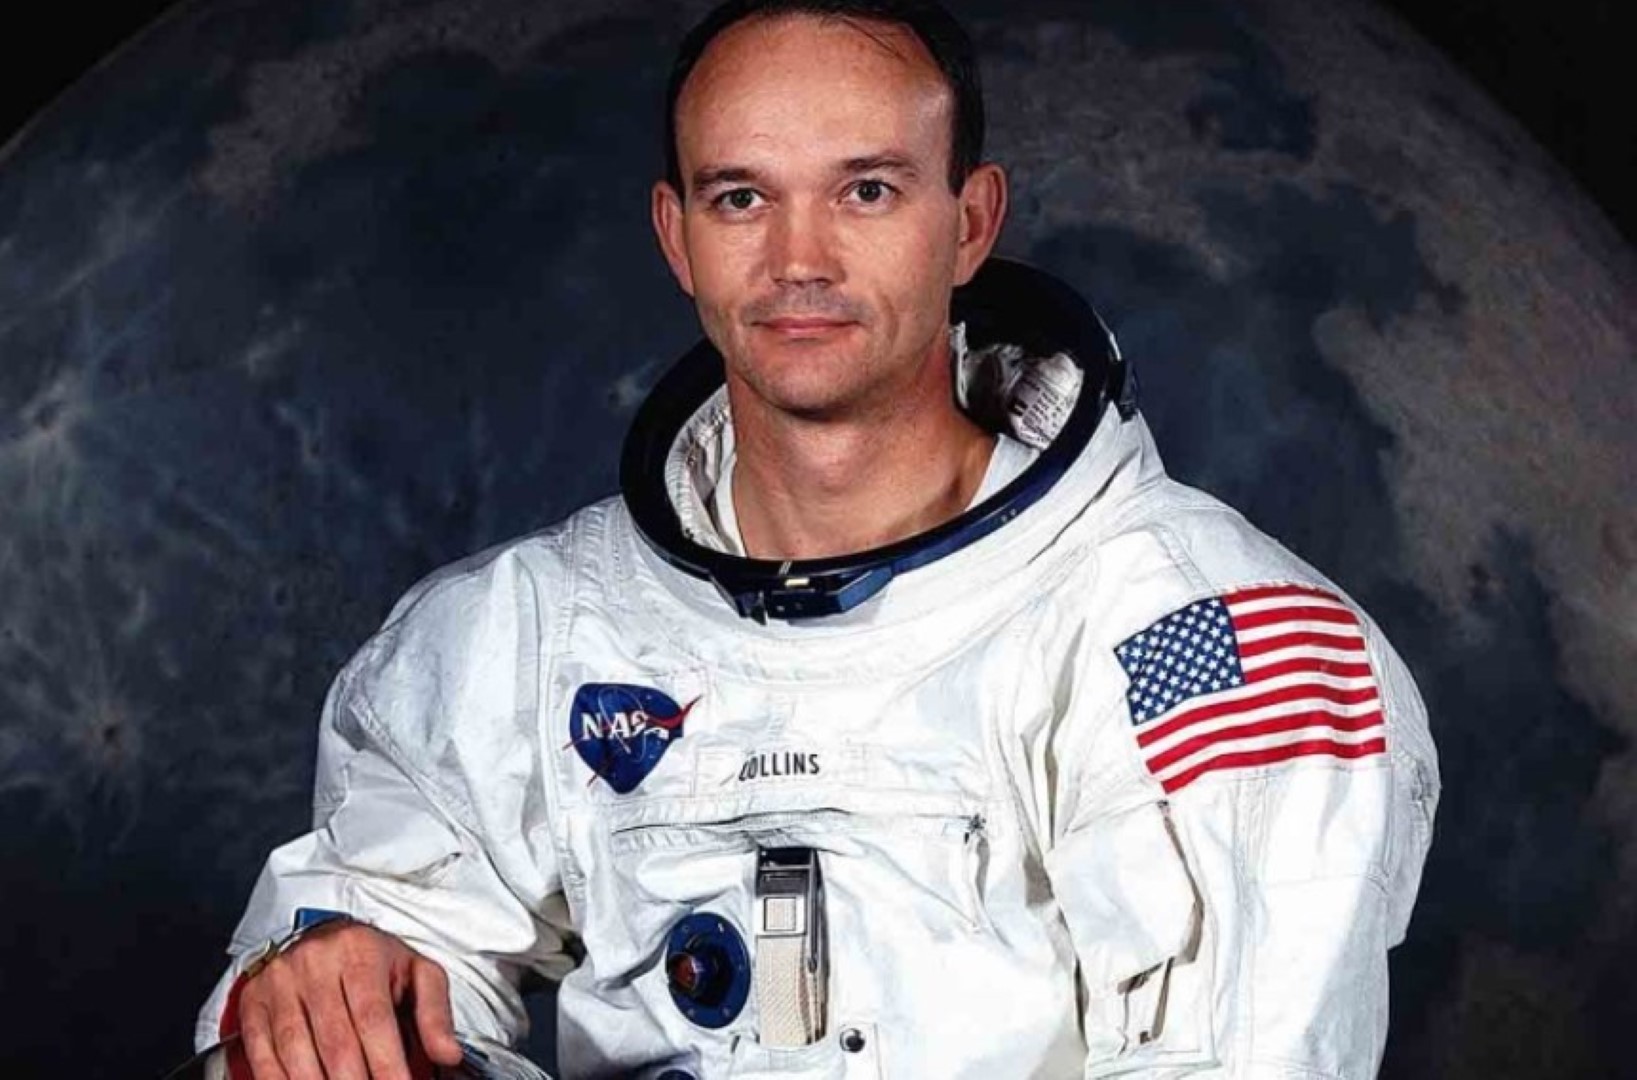 Fallece el astronauta olvidado del Apolo 11 Michael Collins